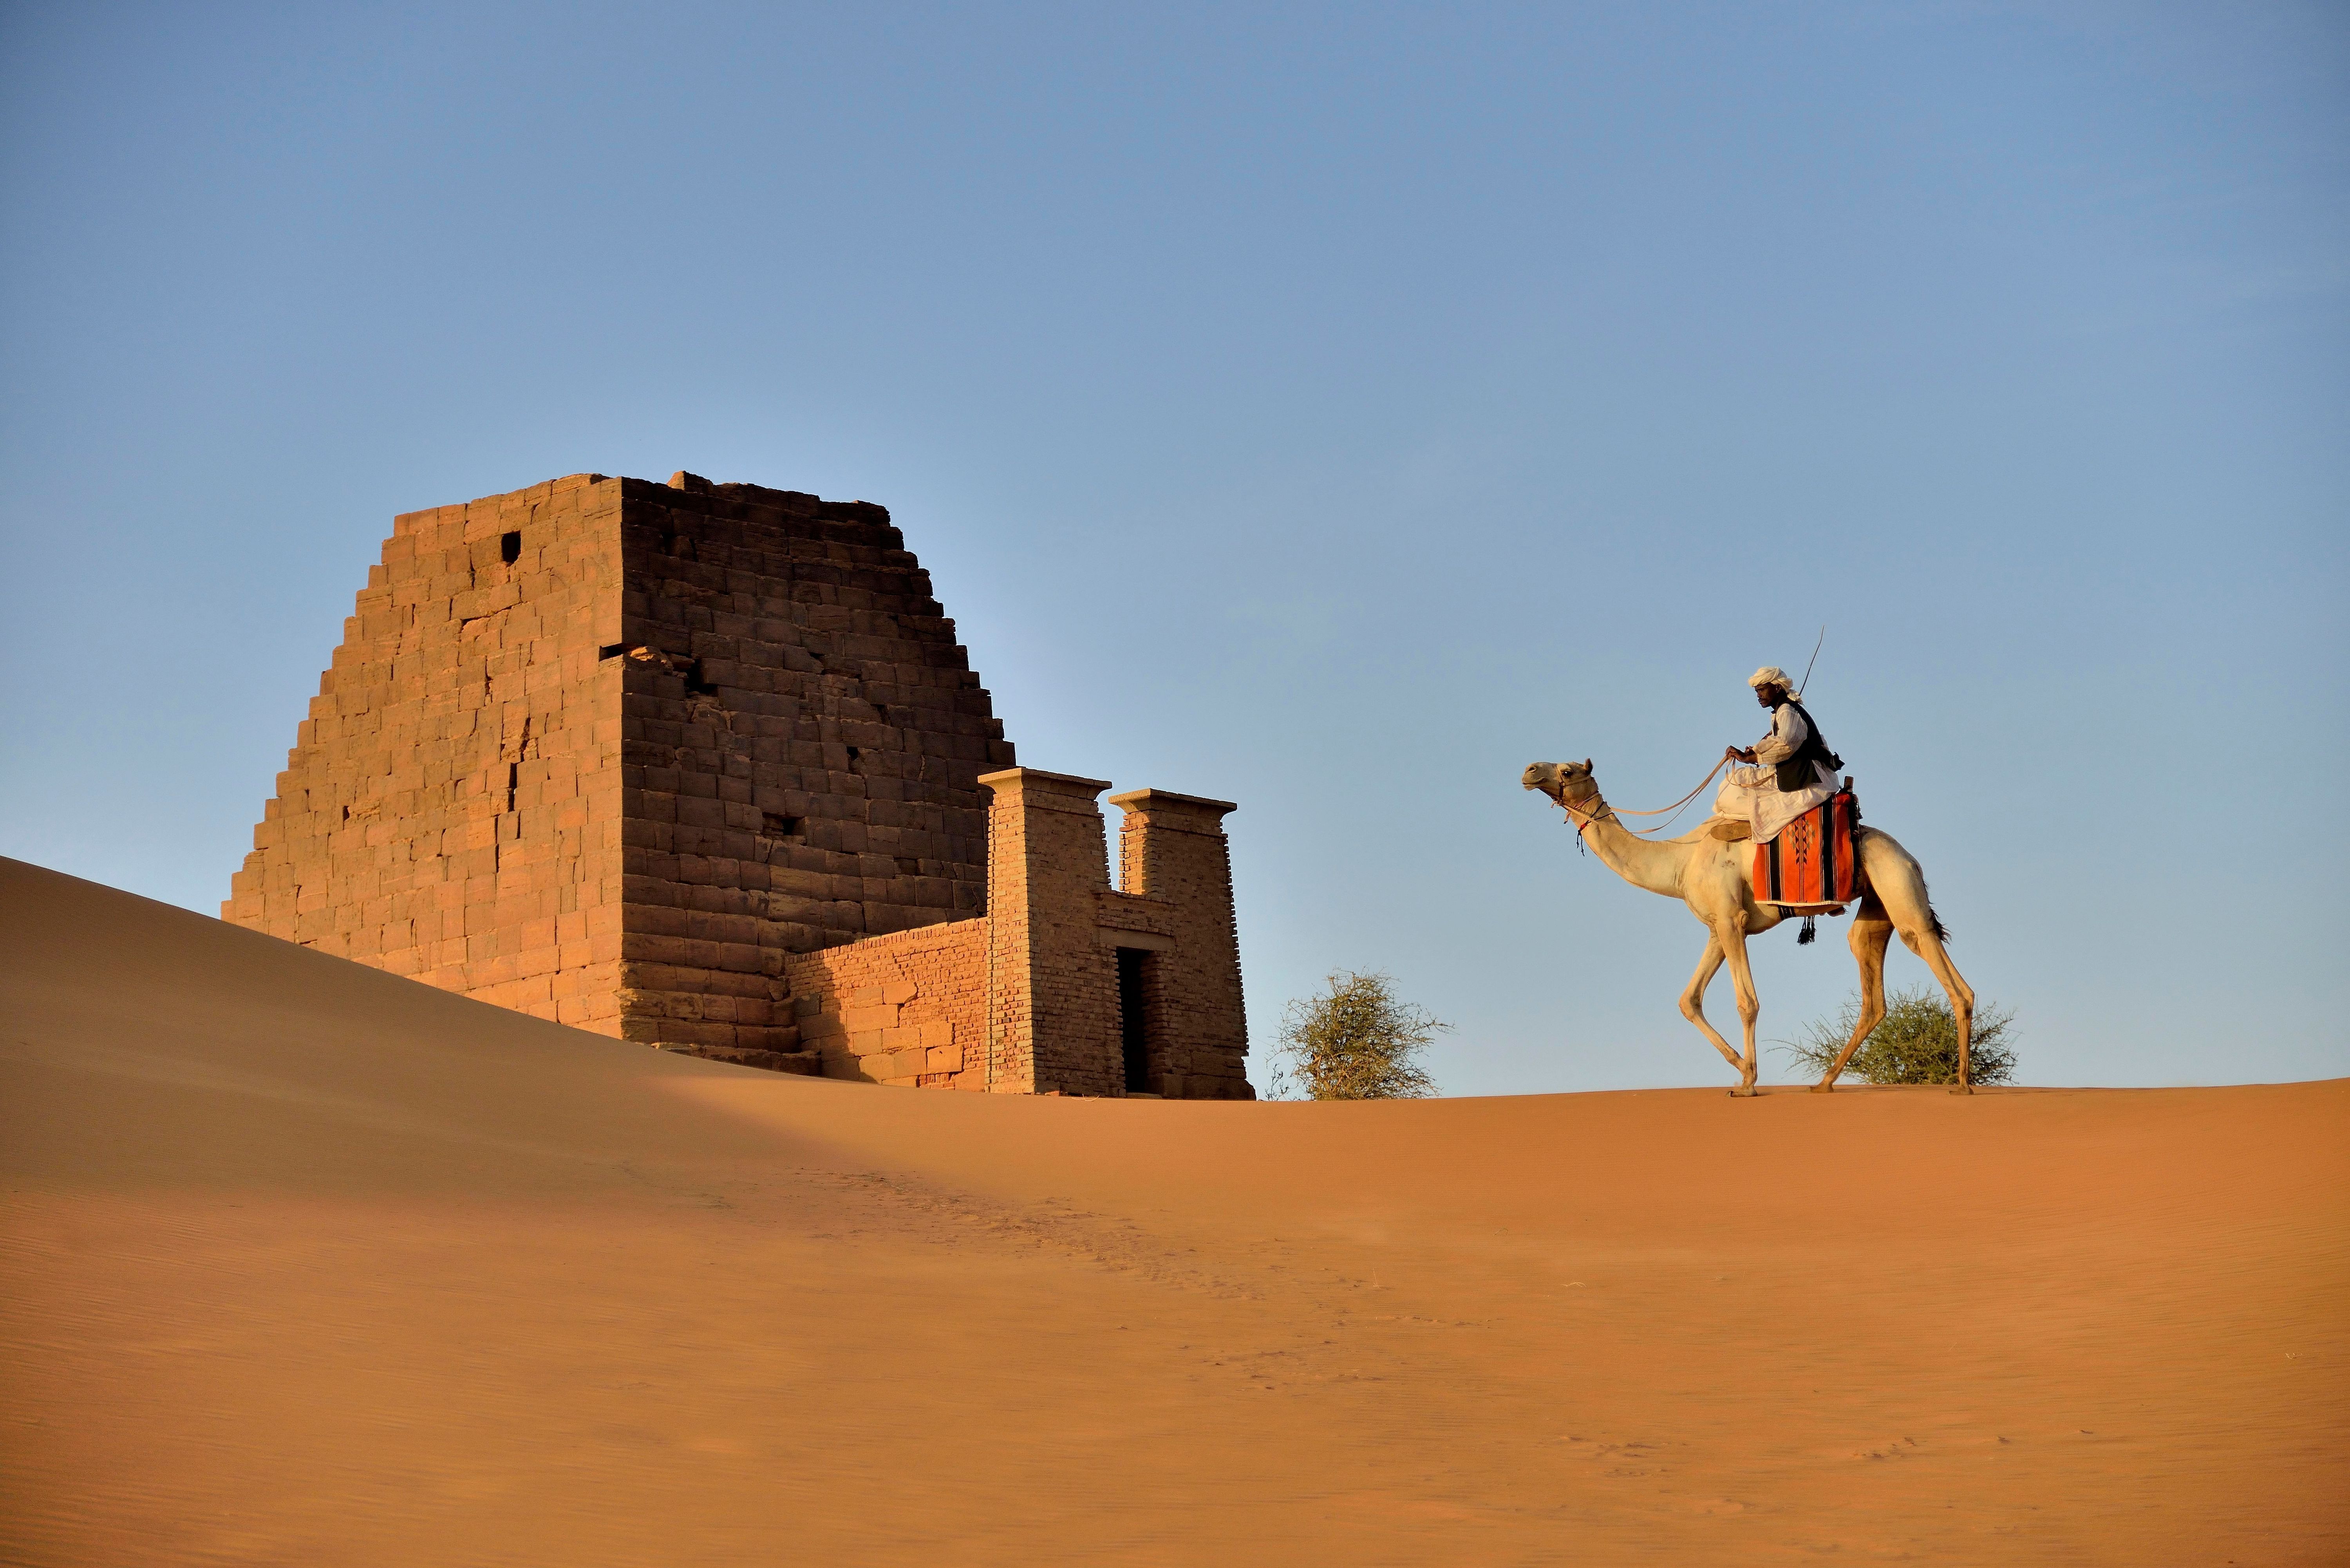 Die Pyramiden von Meroe im Sudan gehören seit 2011 zum Unesco-Weltkulturerbe. Die meisten Pyramiden gibt es tatsächlich im Sudan - hier stehen etwa 200 bis 250 Pyramiden. Auch dort wurden die Pyramiden als Grabmäler zu Ehren der Königinnen und Könige gebaut.